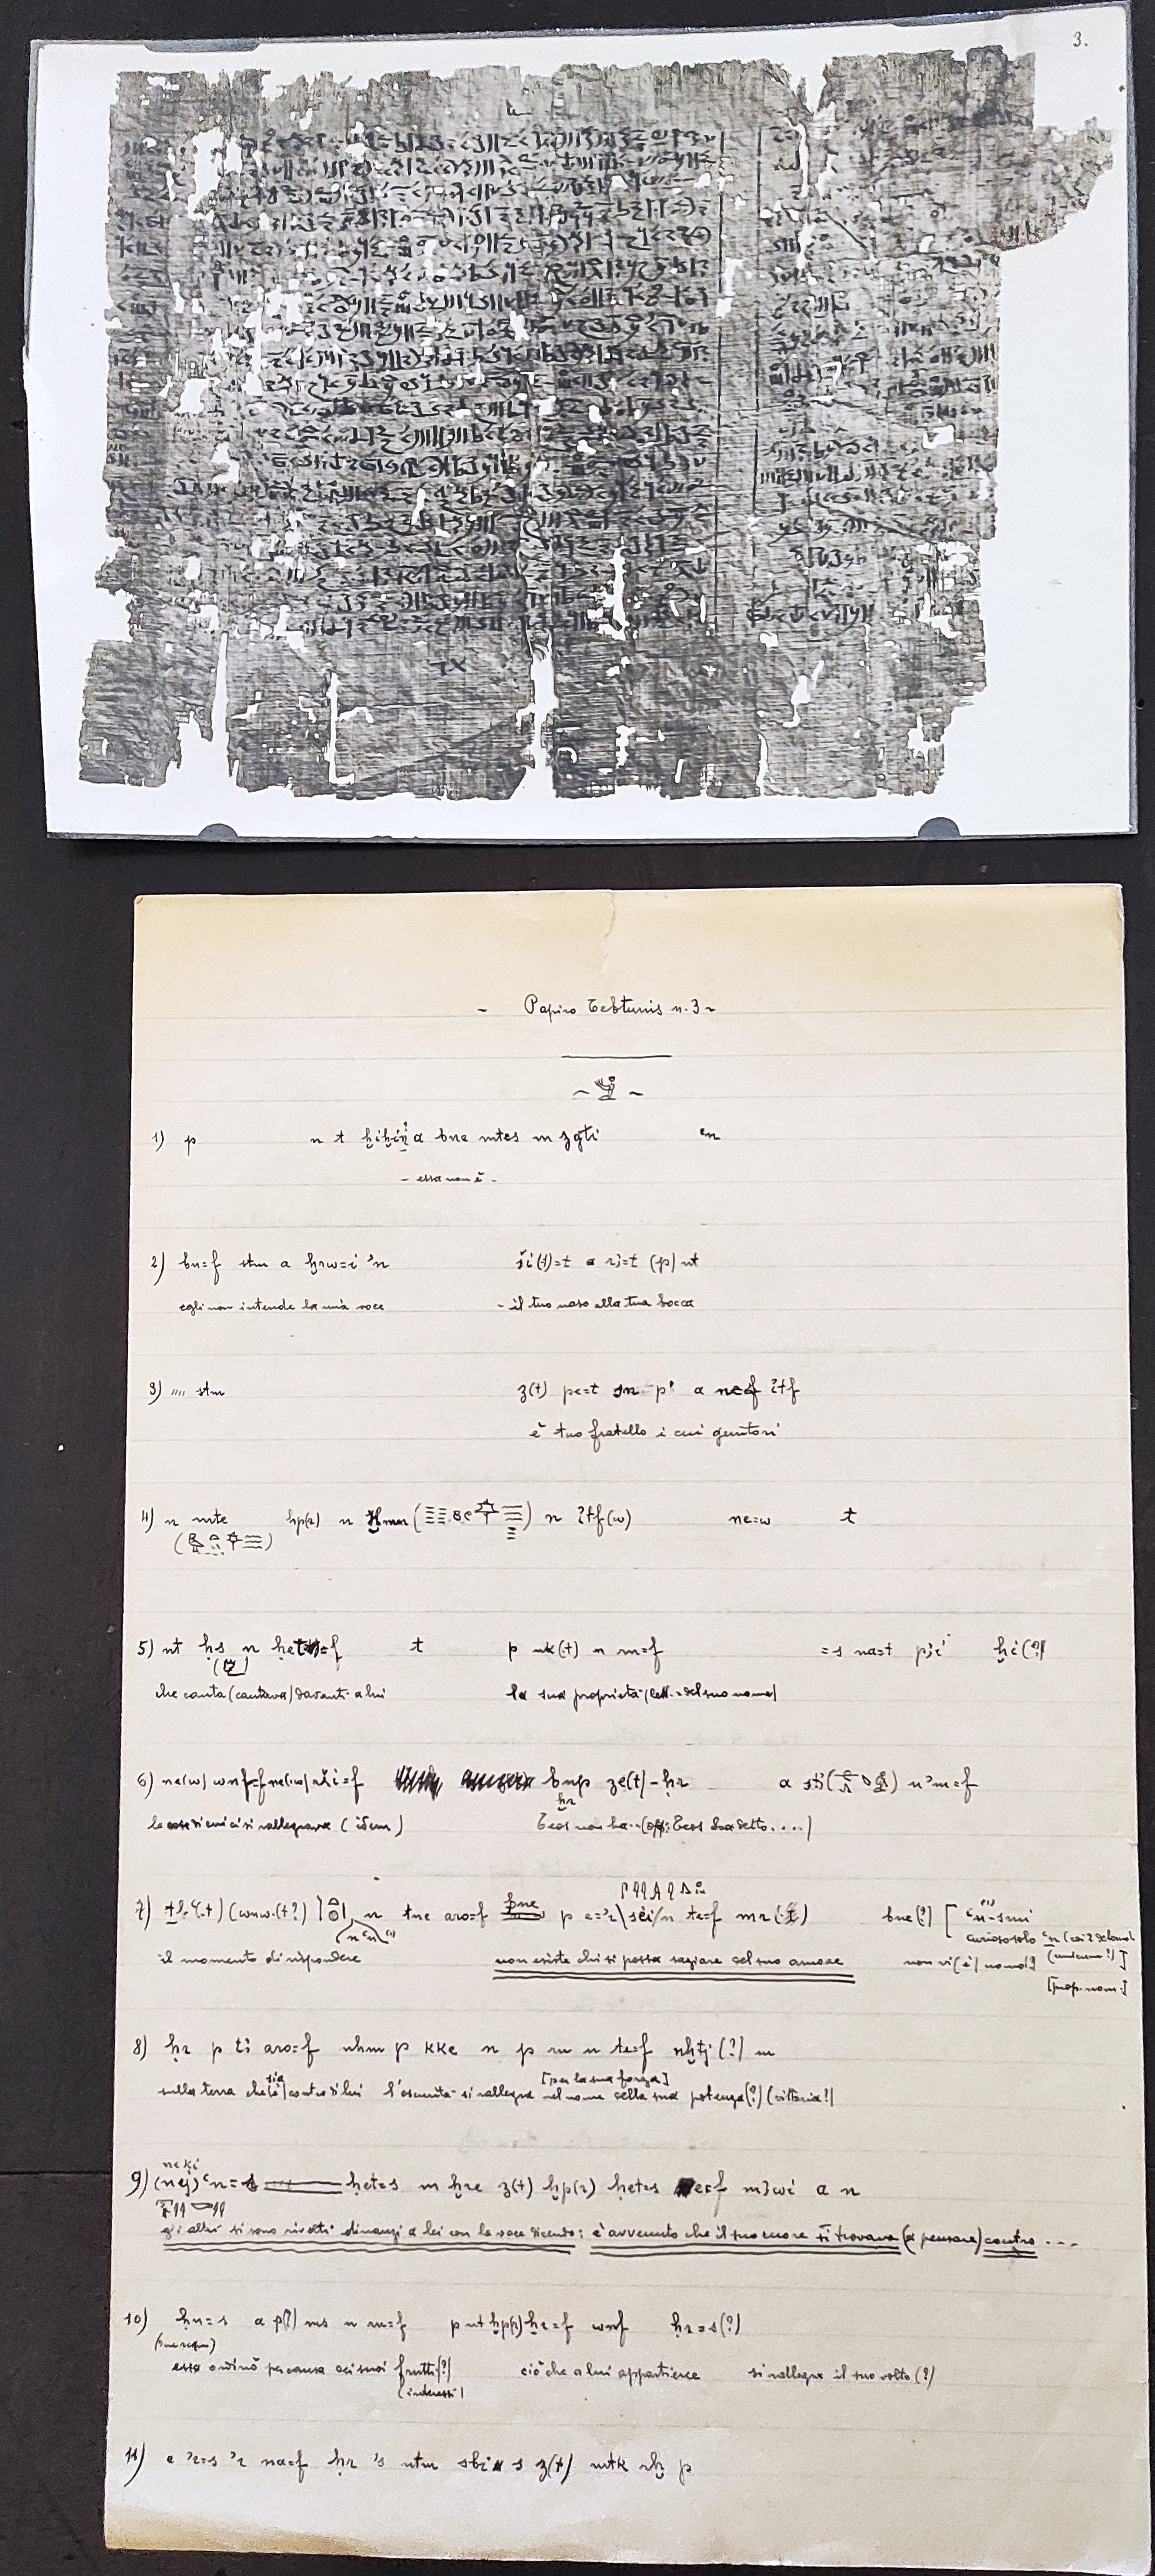 Frammento di papiro da Tebtynis con appunti e trascrizione di Giuseppe Botti. (ASTo, Archivio Giuseppe Botti, mazzo 22, fasc. 6)